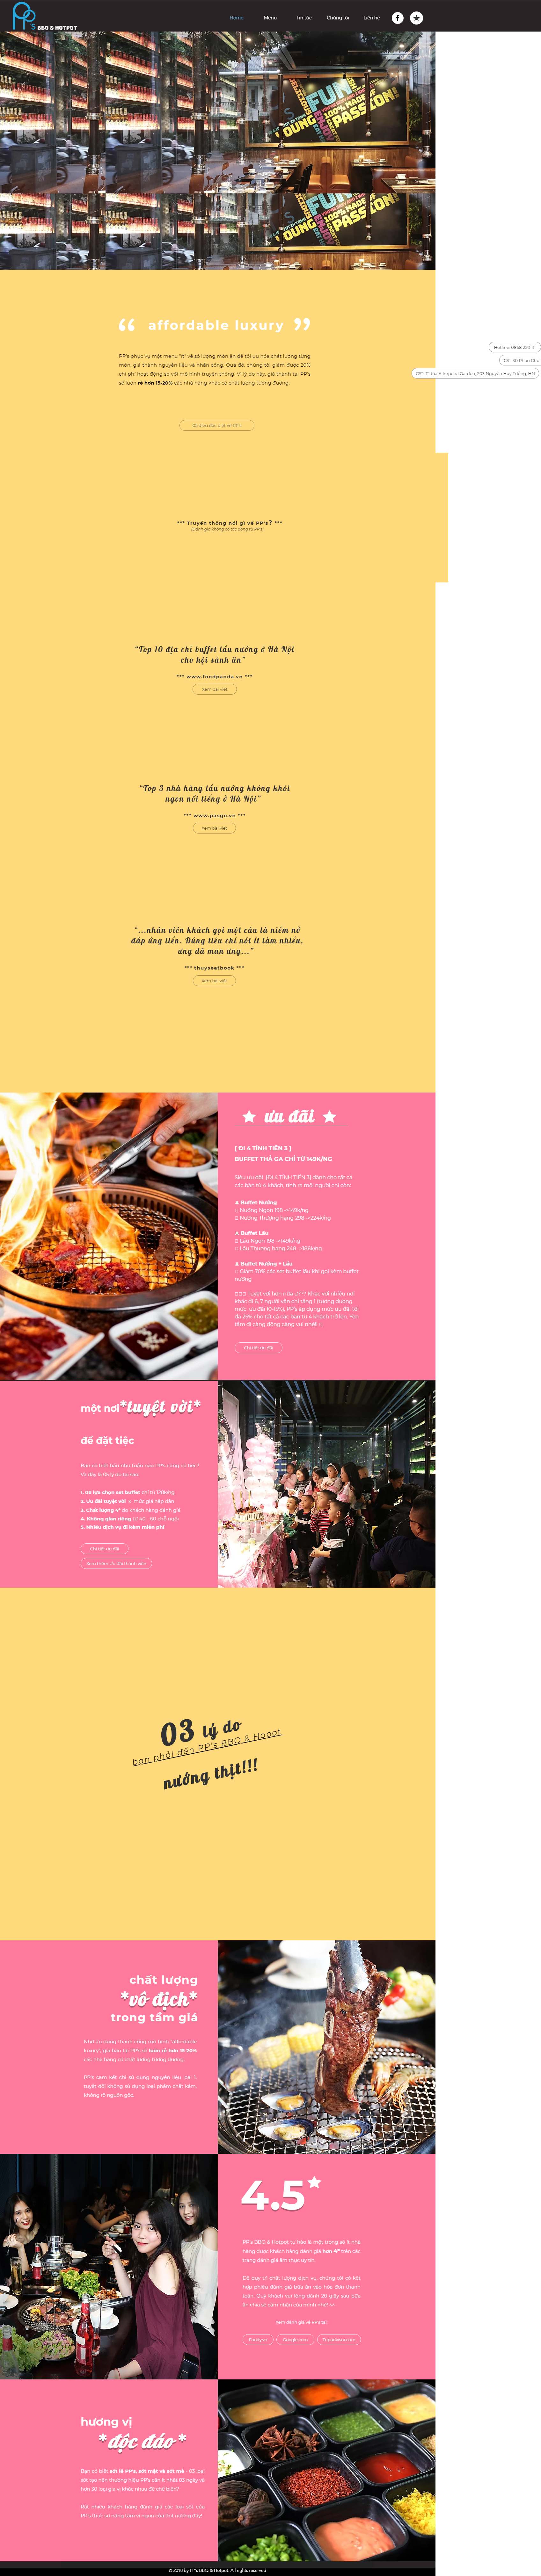 Thiết kế Website nhà hàng lẩu nướng - www.ppsbbq.vn